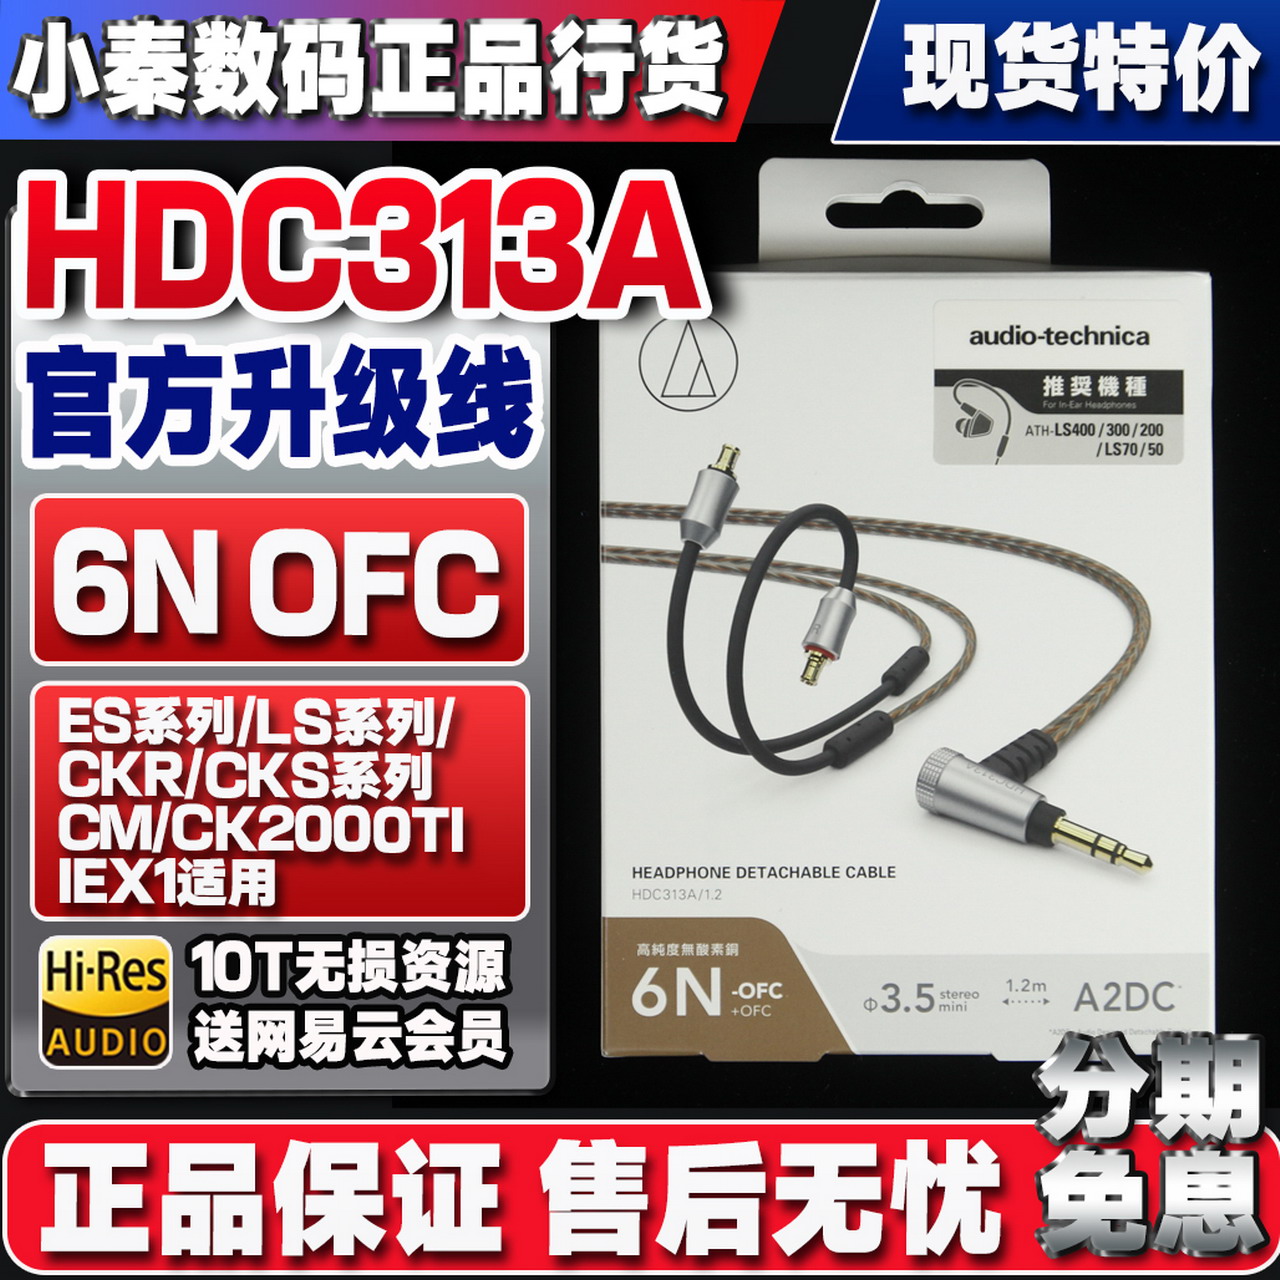 官方平衡升级线HDC313A HDC213/214/212A  HDC112/113A  HDC114A 影音电器 线材 原图主图